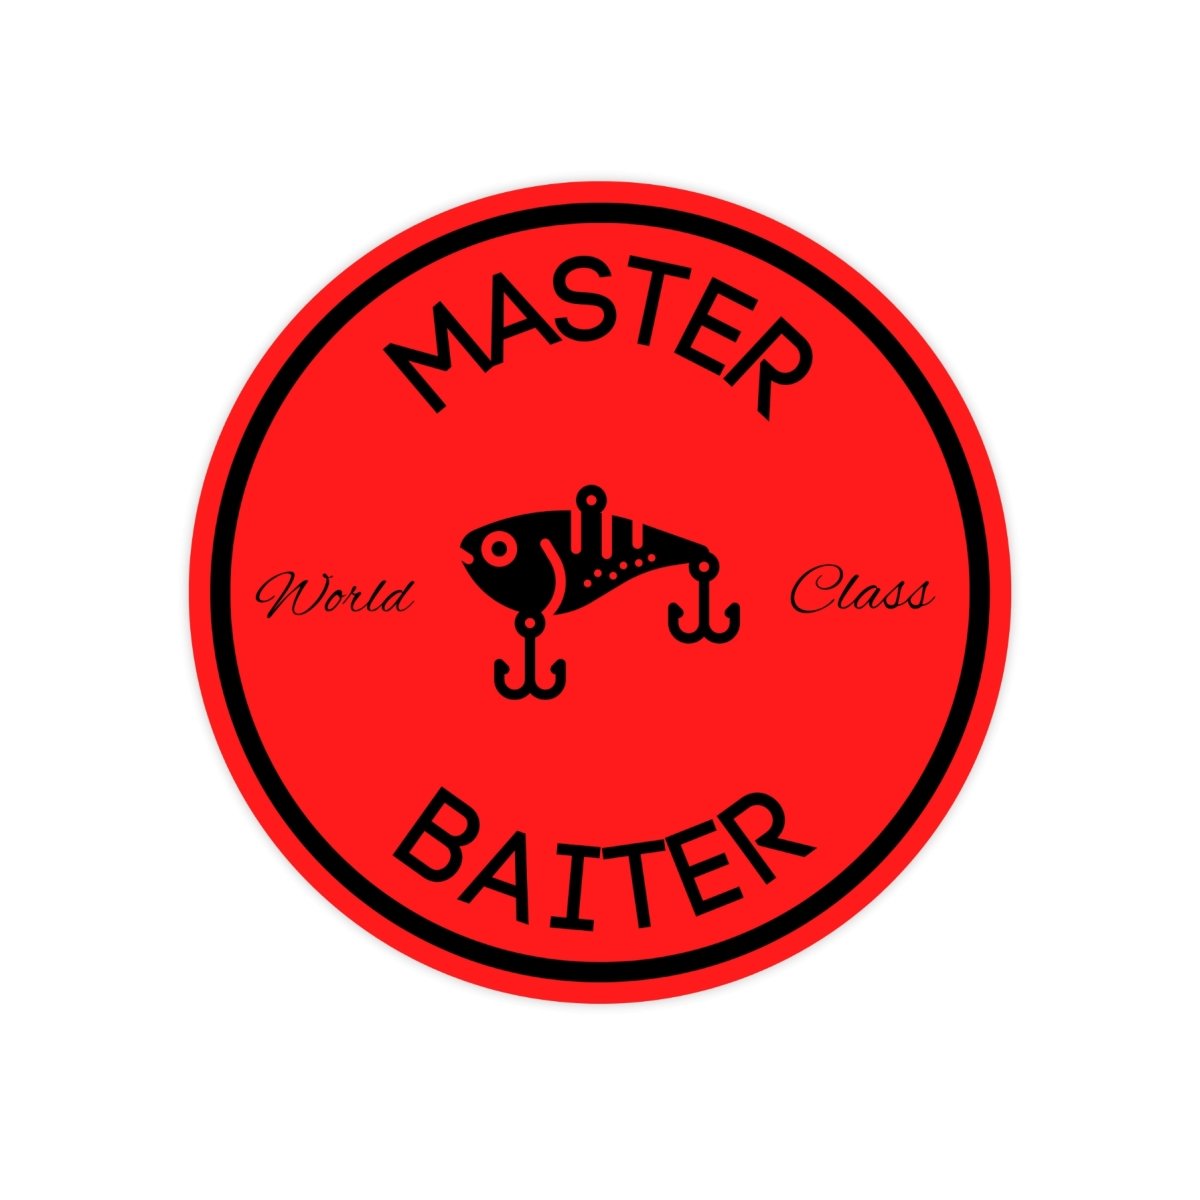 World Class Master Baiter Funny Meme Sticker - stickerbullWorld Class Master Baiter Funny Meme StickerRetail StickerstickerbullstickerbullMastRB_Red & BlackWorld Class Master Baiter Funny Meme Sticker